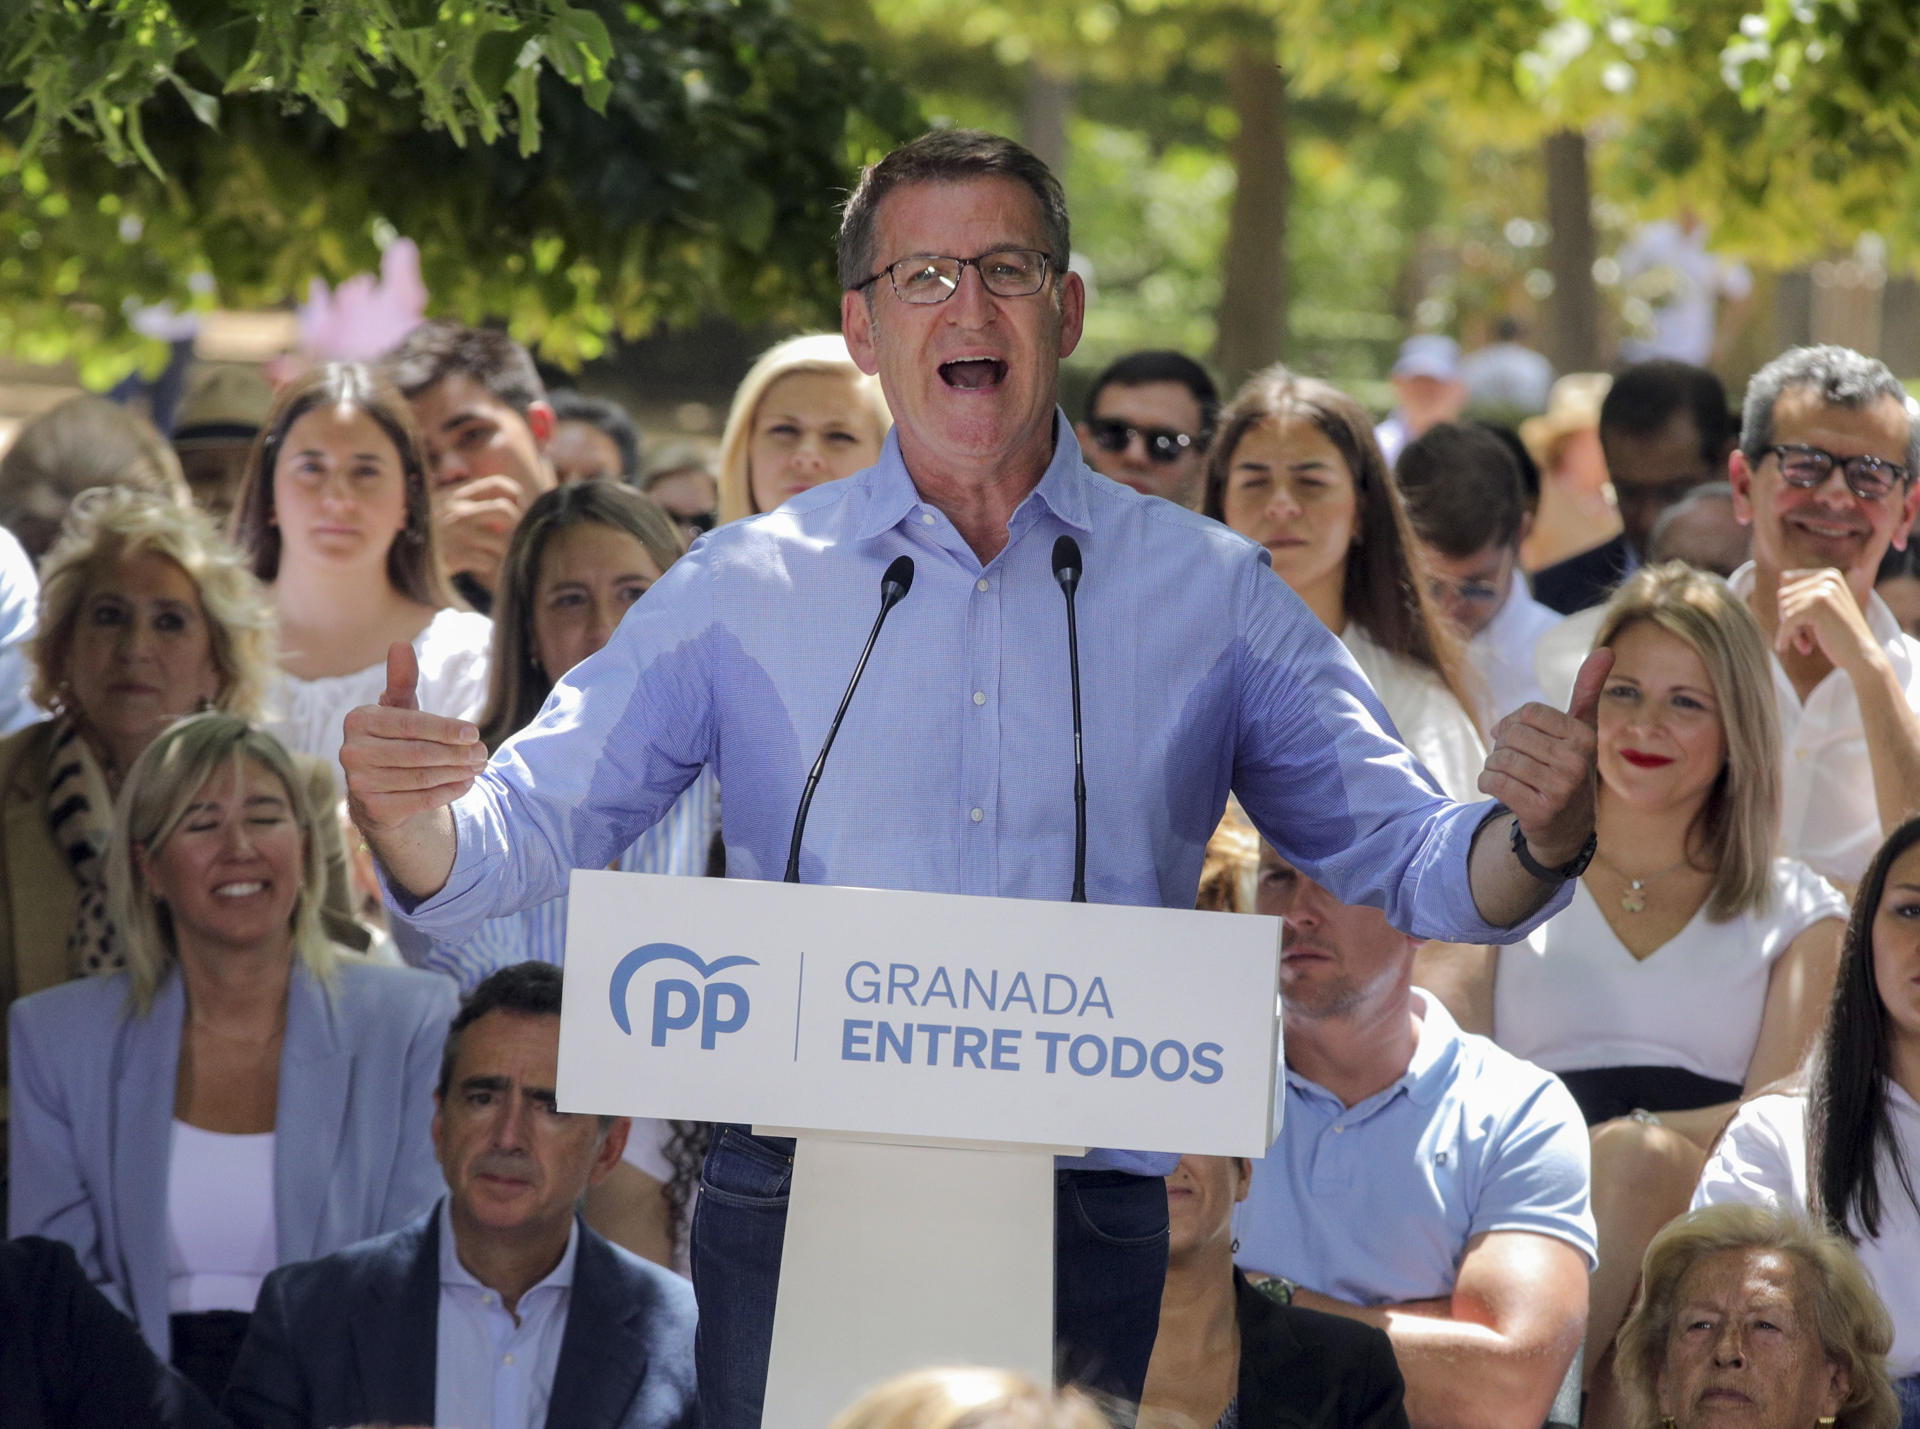 El presidente del Partido Popular, Alberto Núñez Feijóo, interviene este sábado en el mitin del PP que ha tenido lugar en el Parque García Lorca de Granada en apoyo a la candidatura a la alcaldía de Marifran Carazo. EFE/Pepe Torres